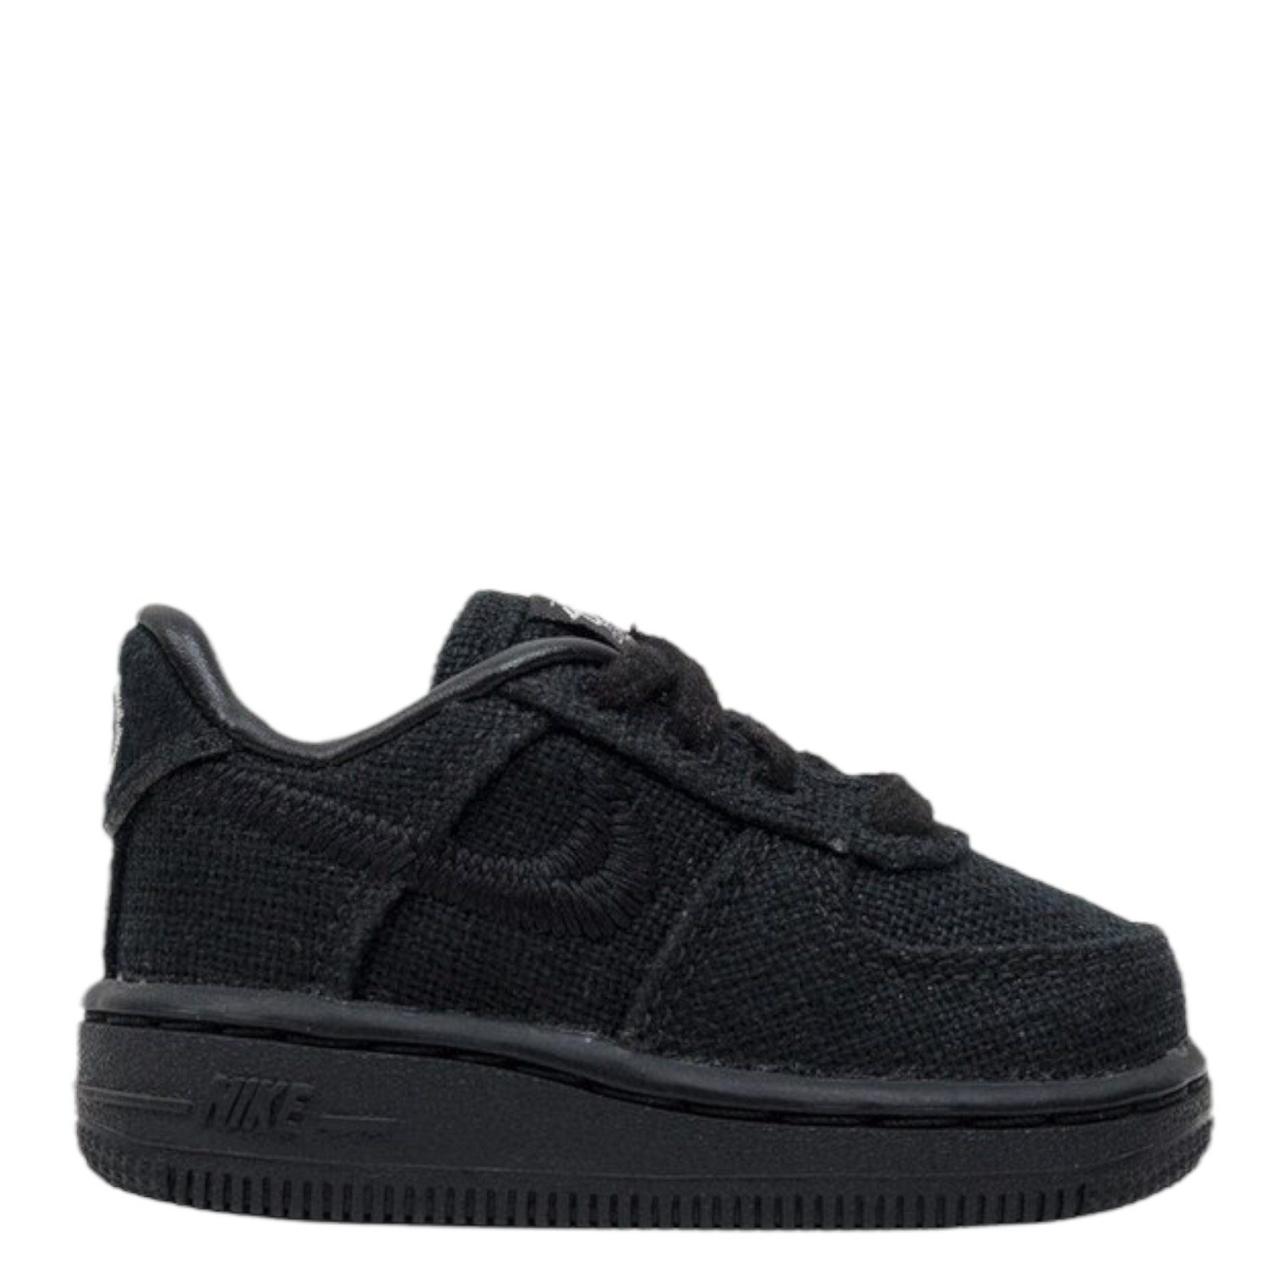 Giày Kids Nike Air Force 1 Low Stussy Black (Td) - Đức Store